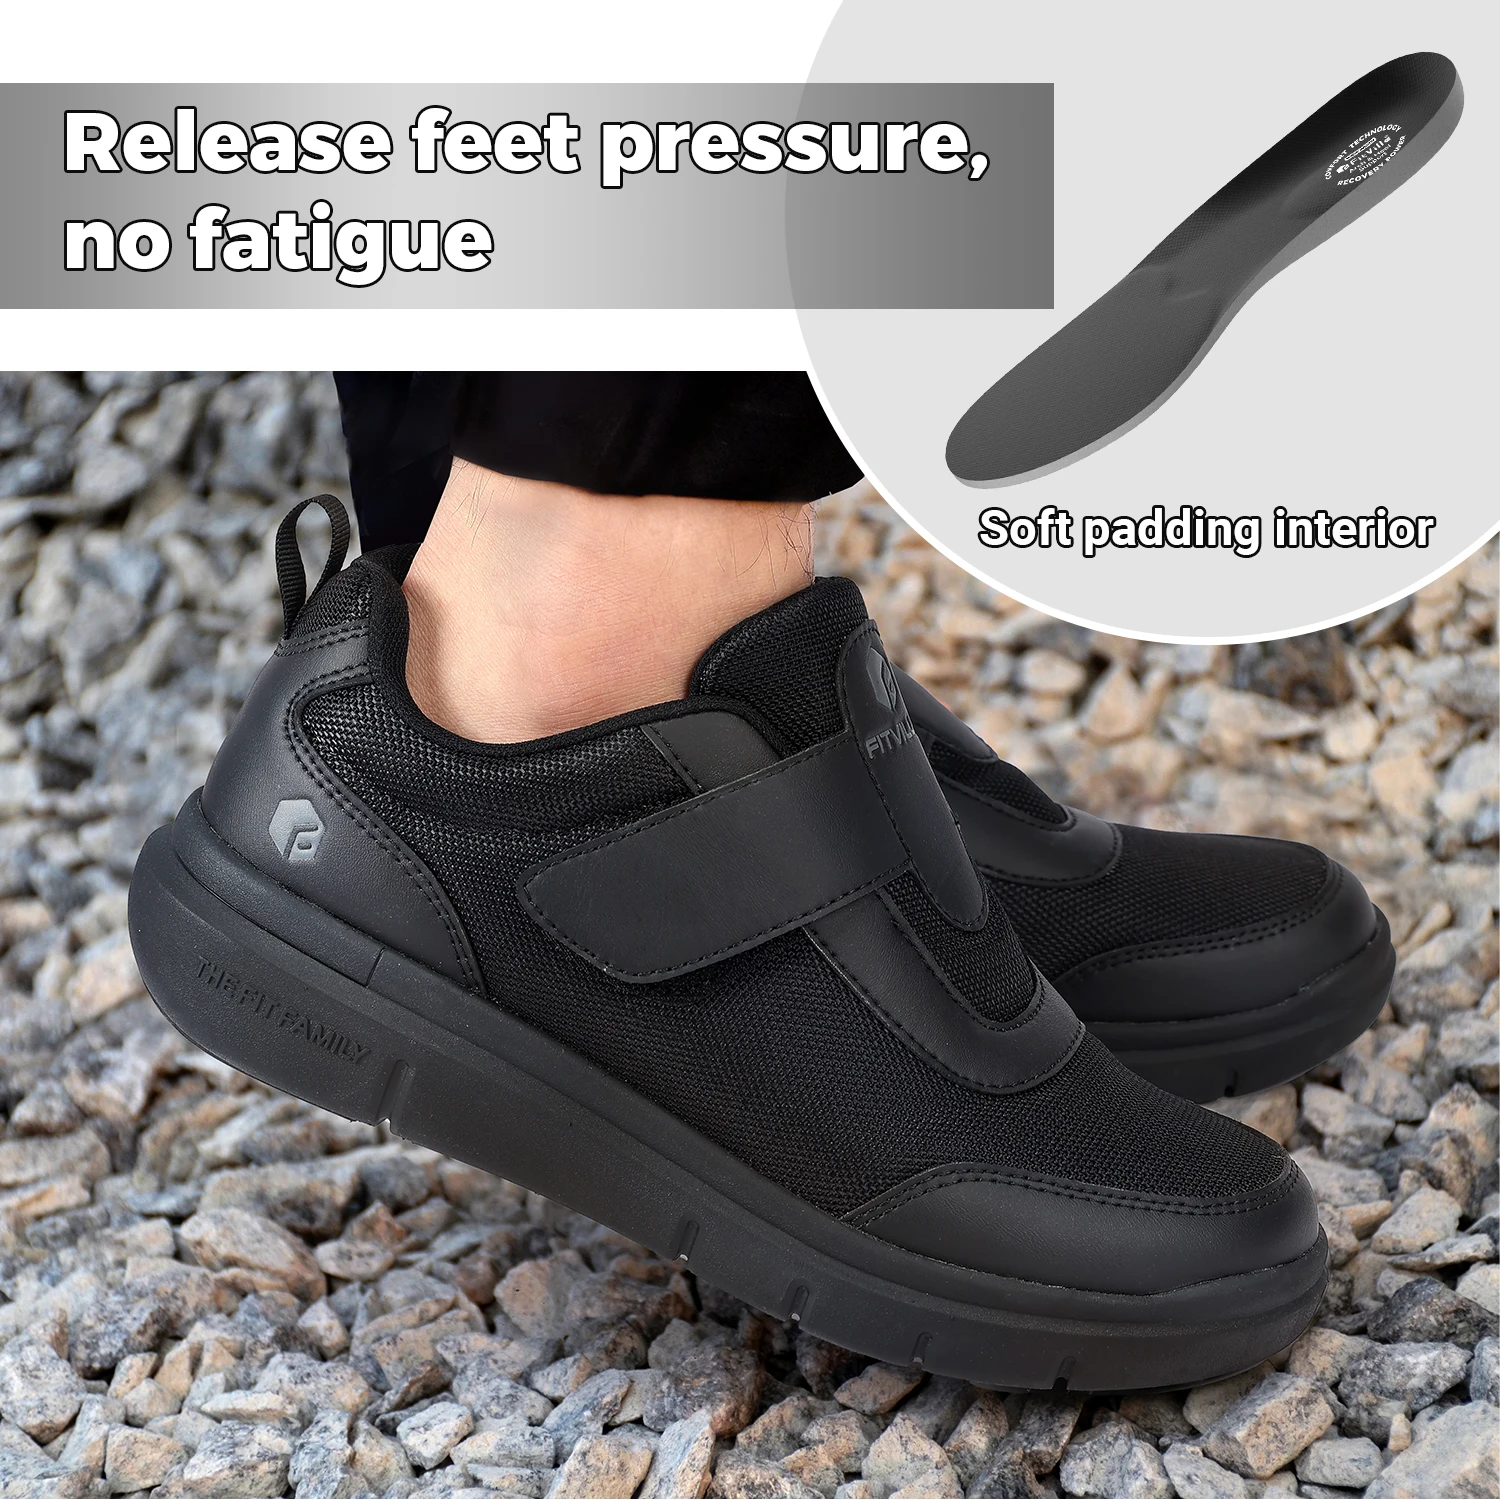 Fit ville Diabetikers chuhe bequeme, extra breite, geschwollene Fuß schuhe für die Schmerz linderung bei Diabetikern mit Fuß gewölbes tütze